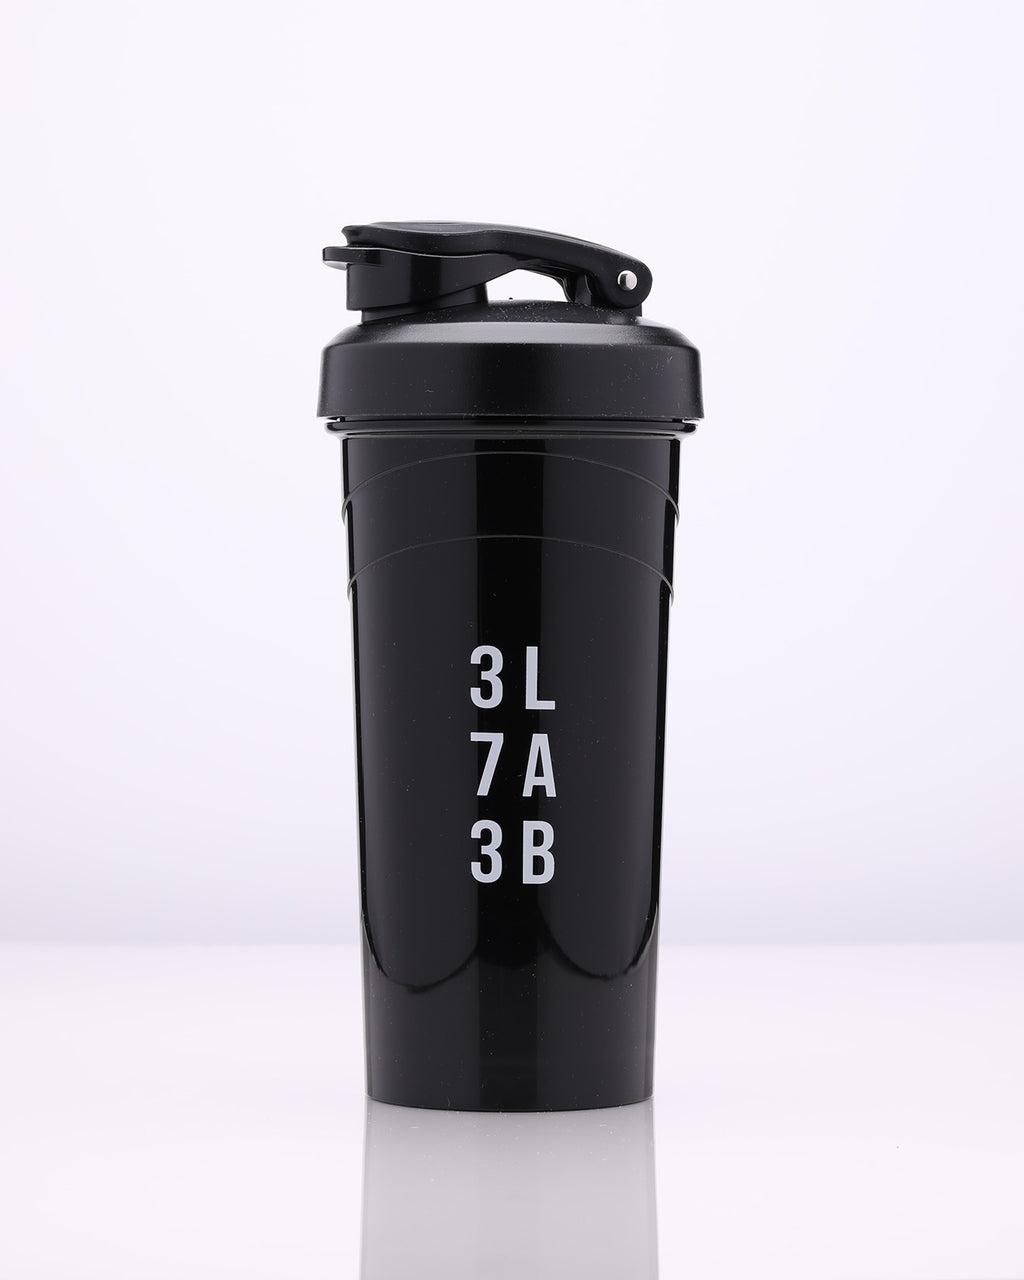 5 Star Nutrition Small Shaker - Black